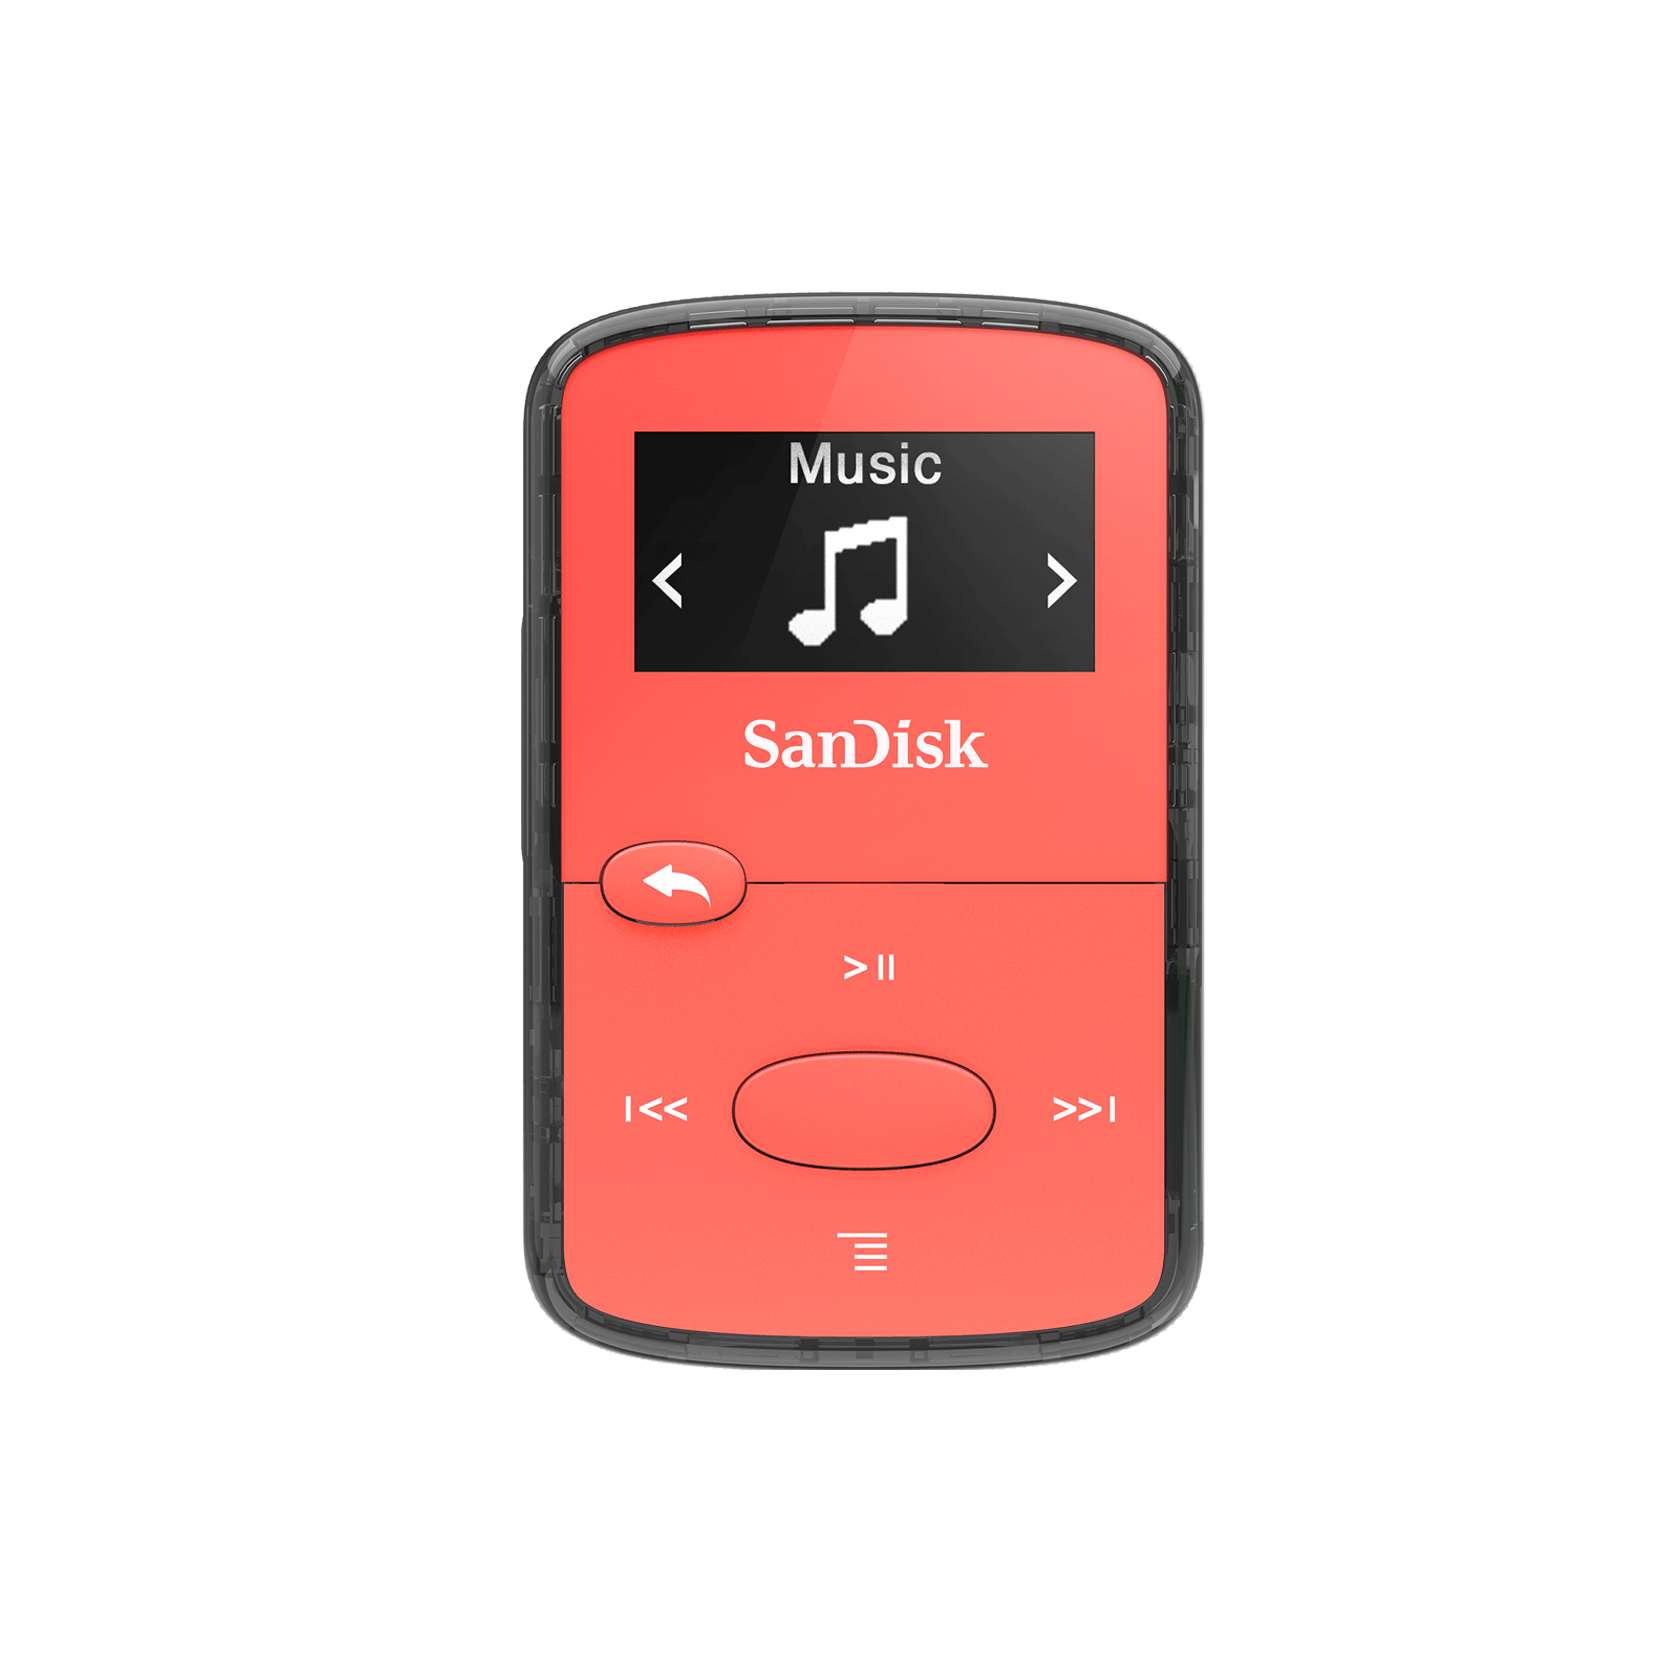 SanDisk Clip Jam MP3 Player 8GB, Red - SDMX26-008G-E46R